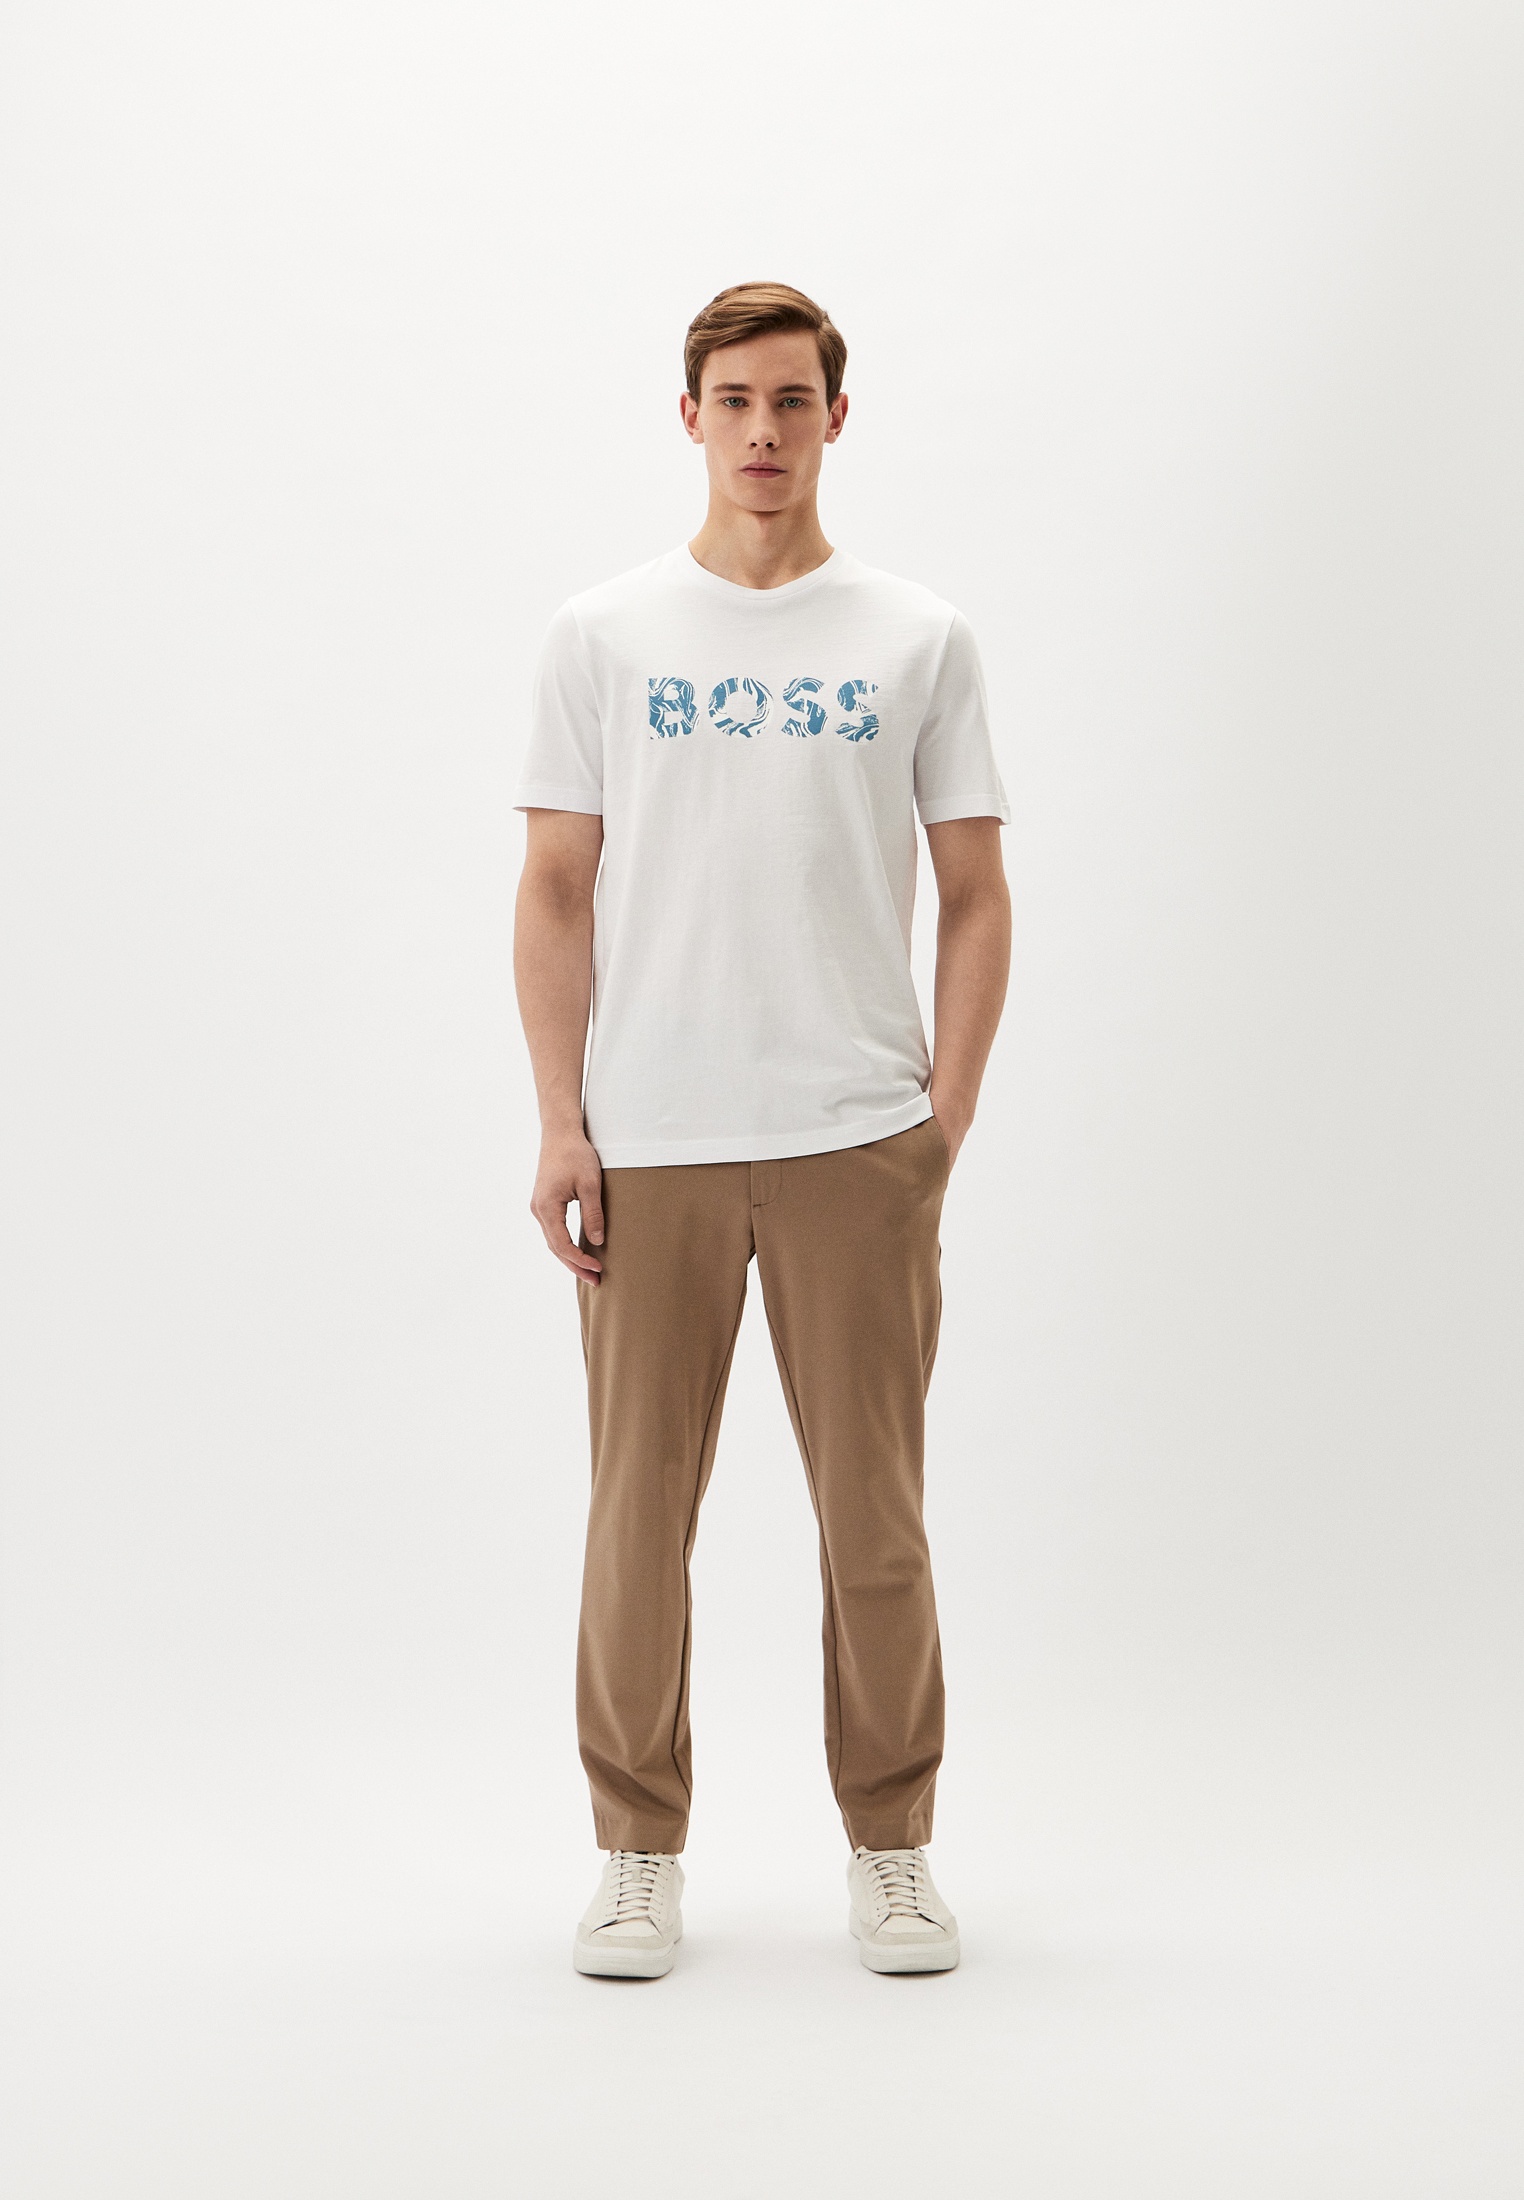 Мужская футболка Boss (Босс) 50515997: изображение 2